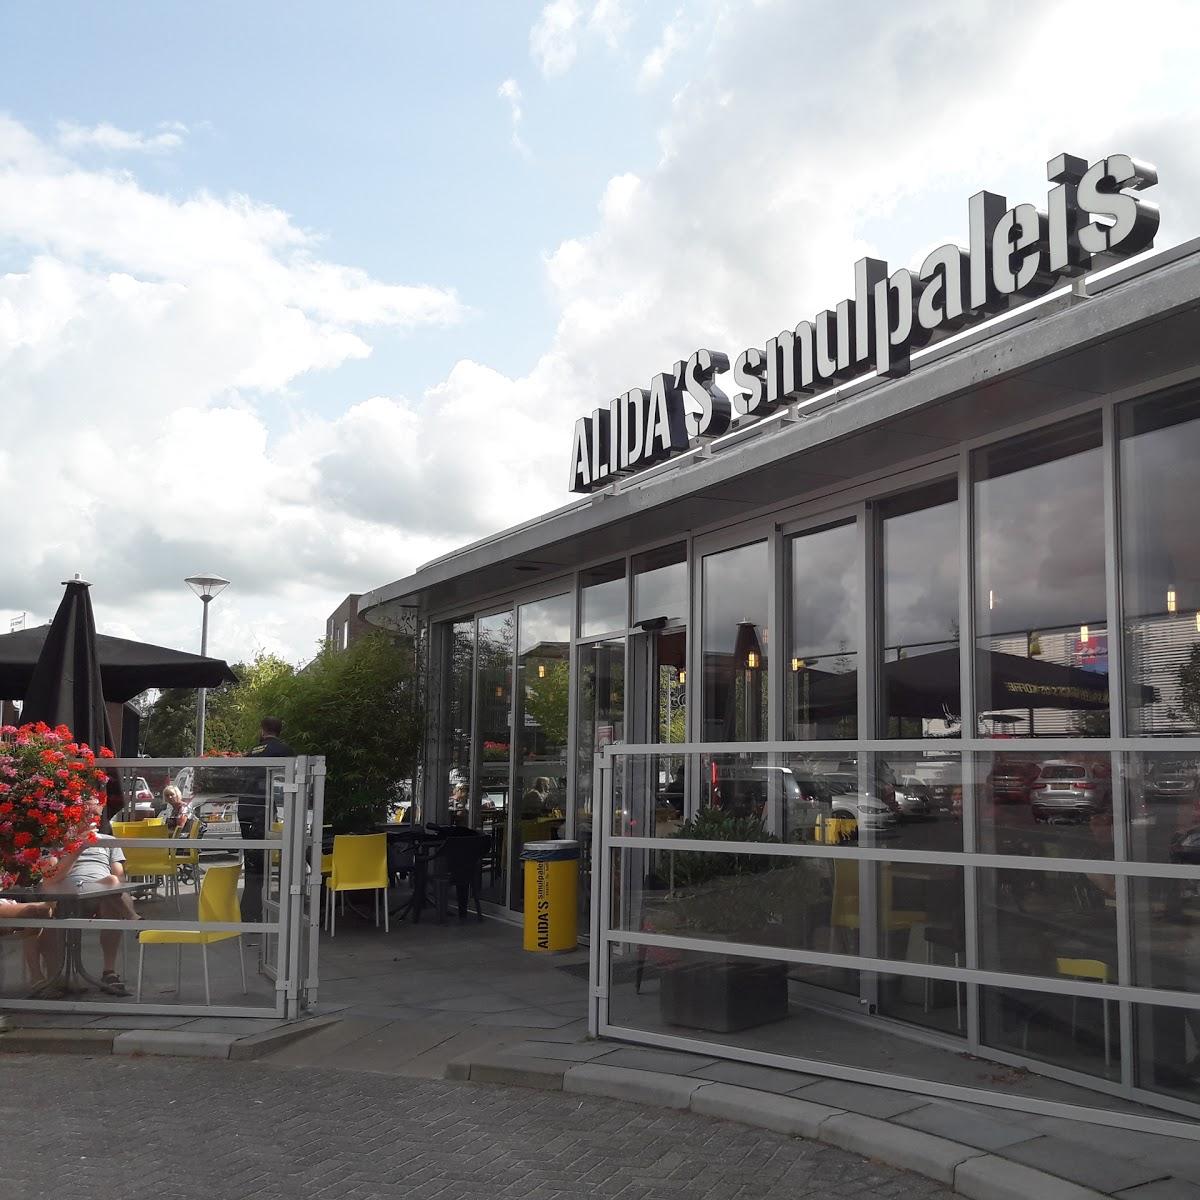 Restaurant "Alida`s Smulpaleis" in Roden